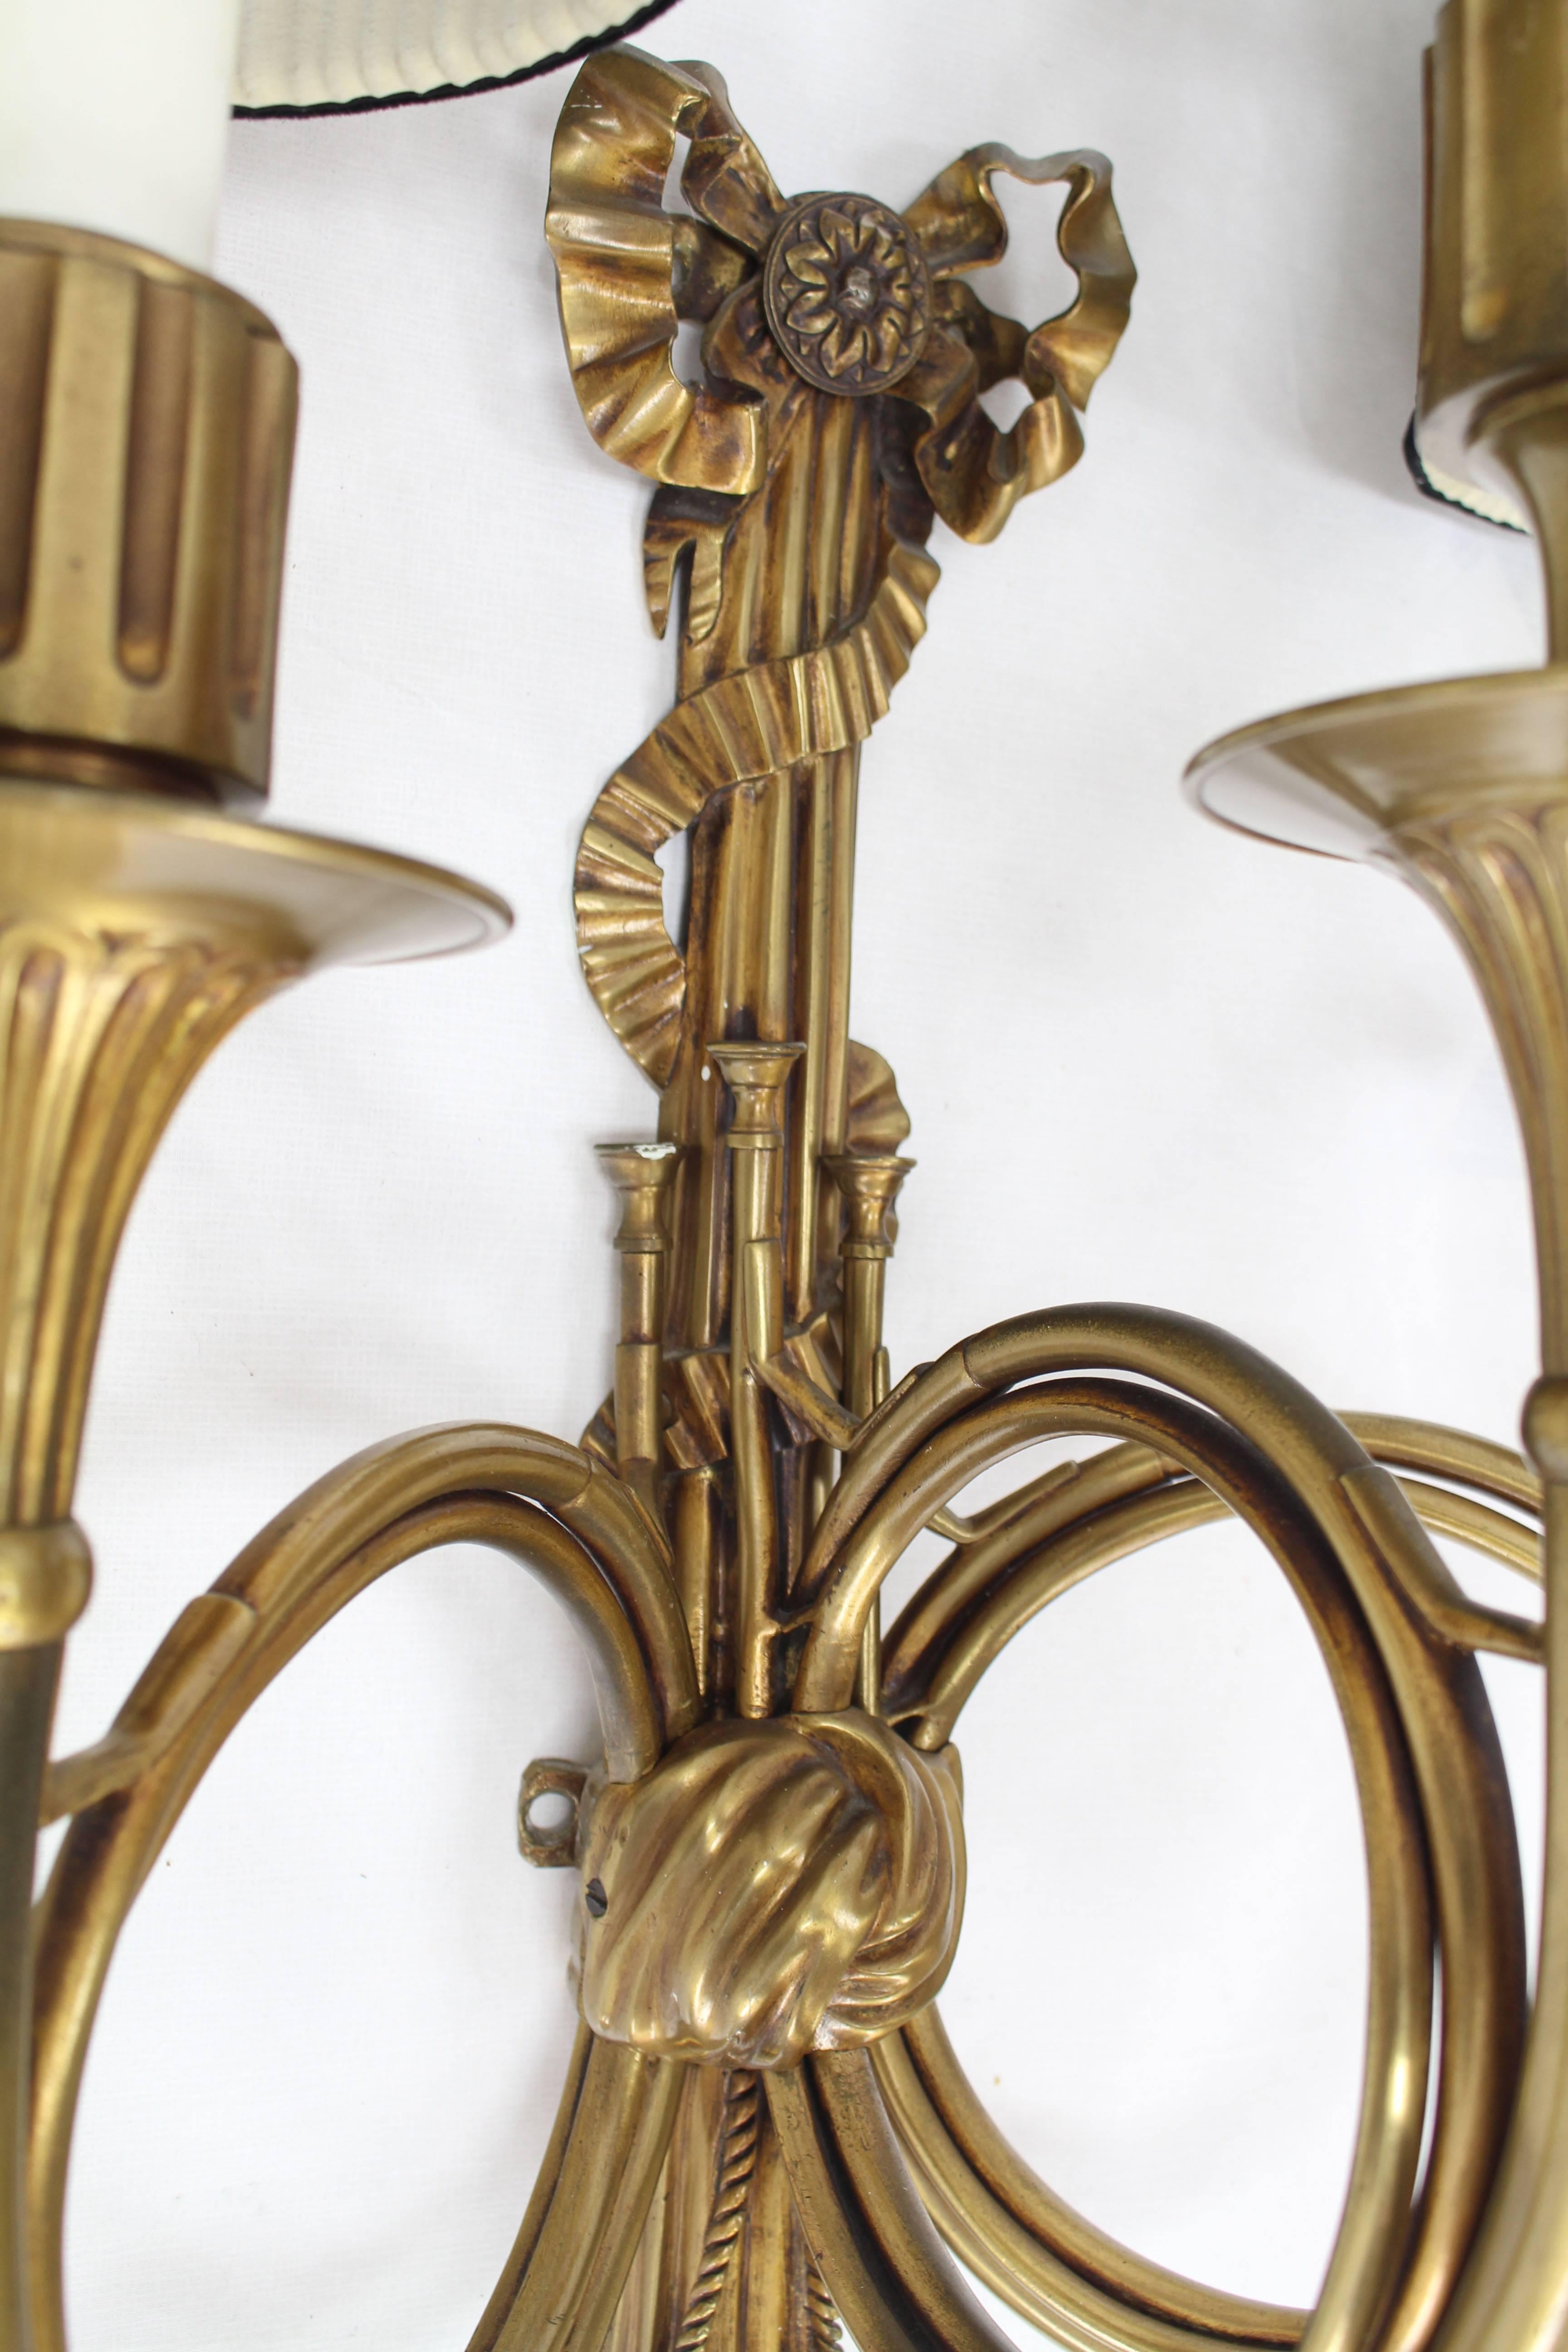 Belle applique française en bronze avec des éléments de corne, de glands et de rubans.
Il s'agit d'un beau et lourd luminaire avec trois lumières et des abat-jour originaux.